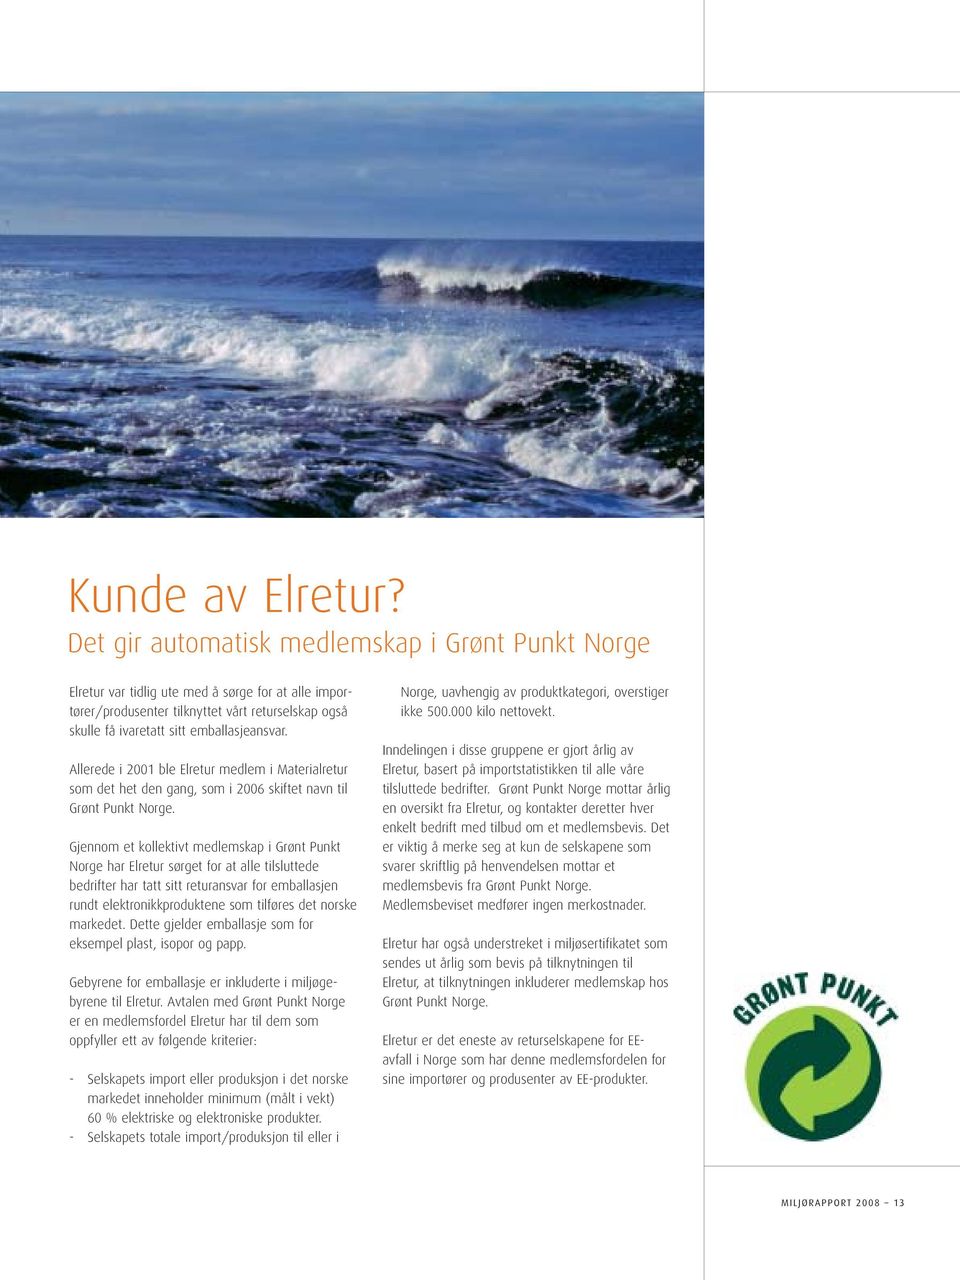 Allerede i 2001 ble Elretur medlem i Materialretur som det het den gang, som i 2006 skiftet navn til Grønt Punkt Norge.